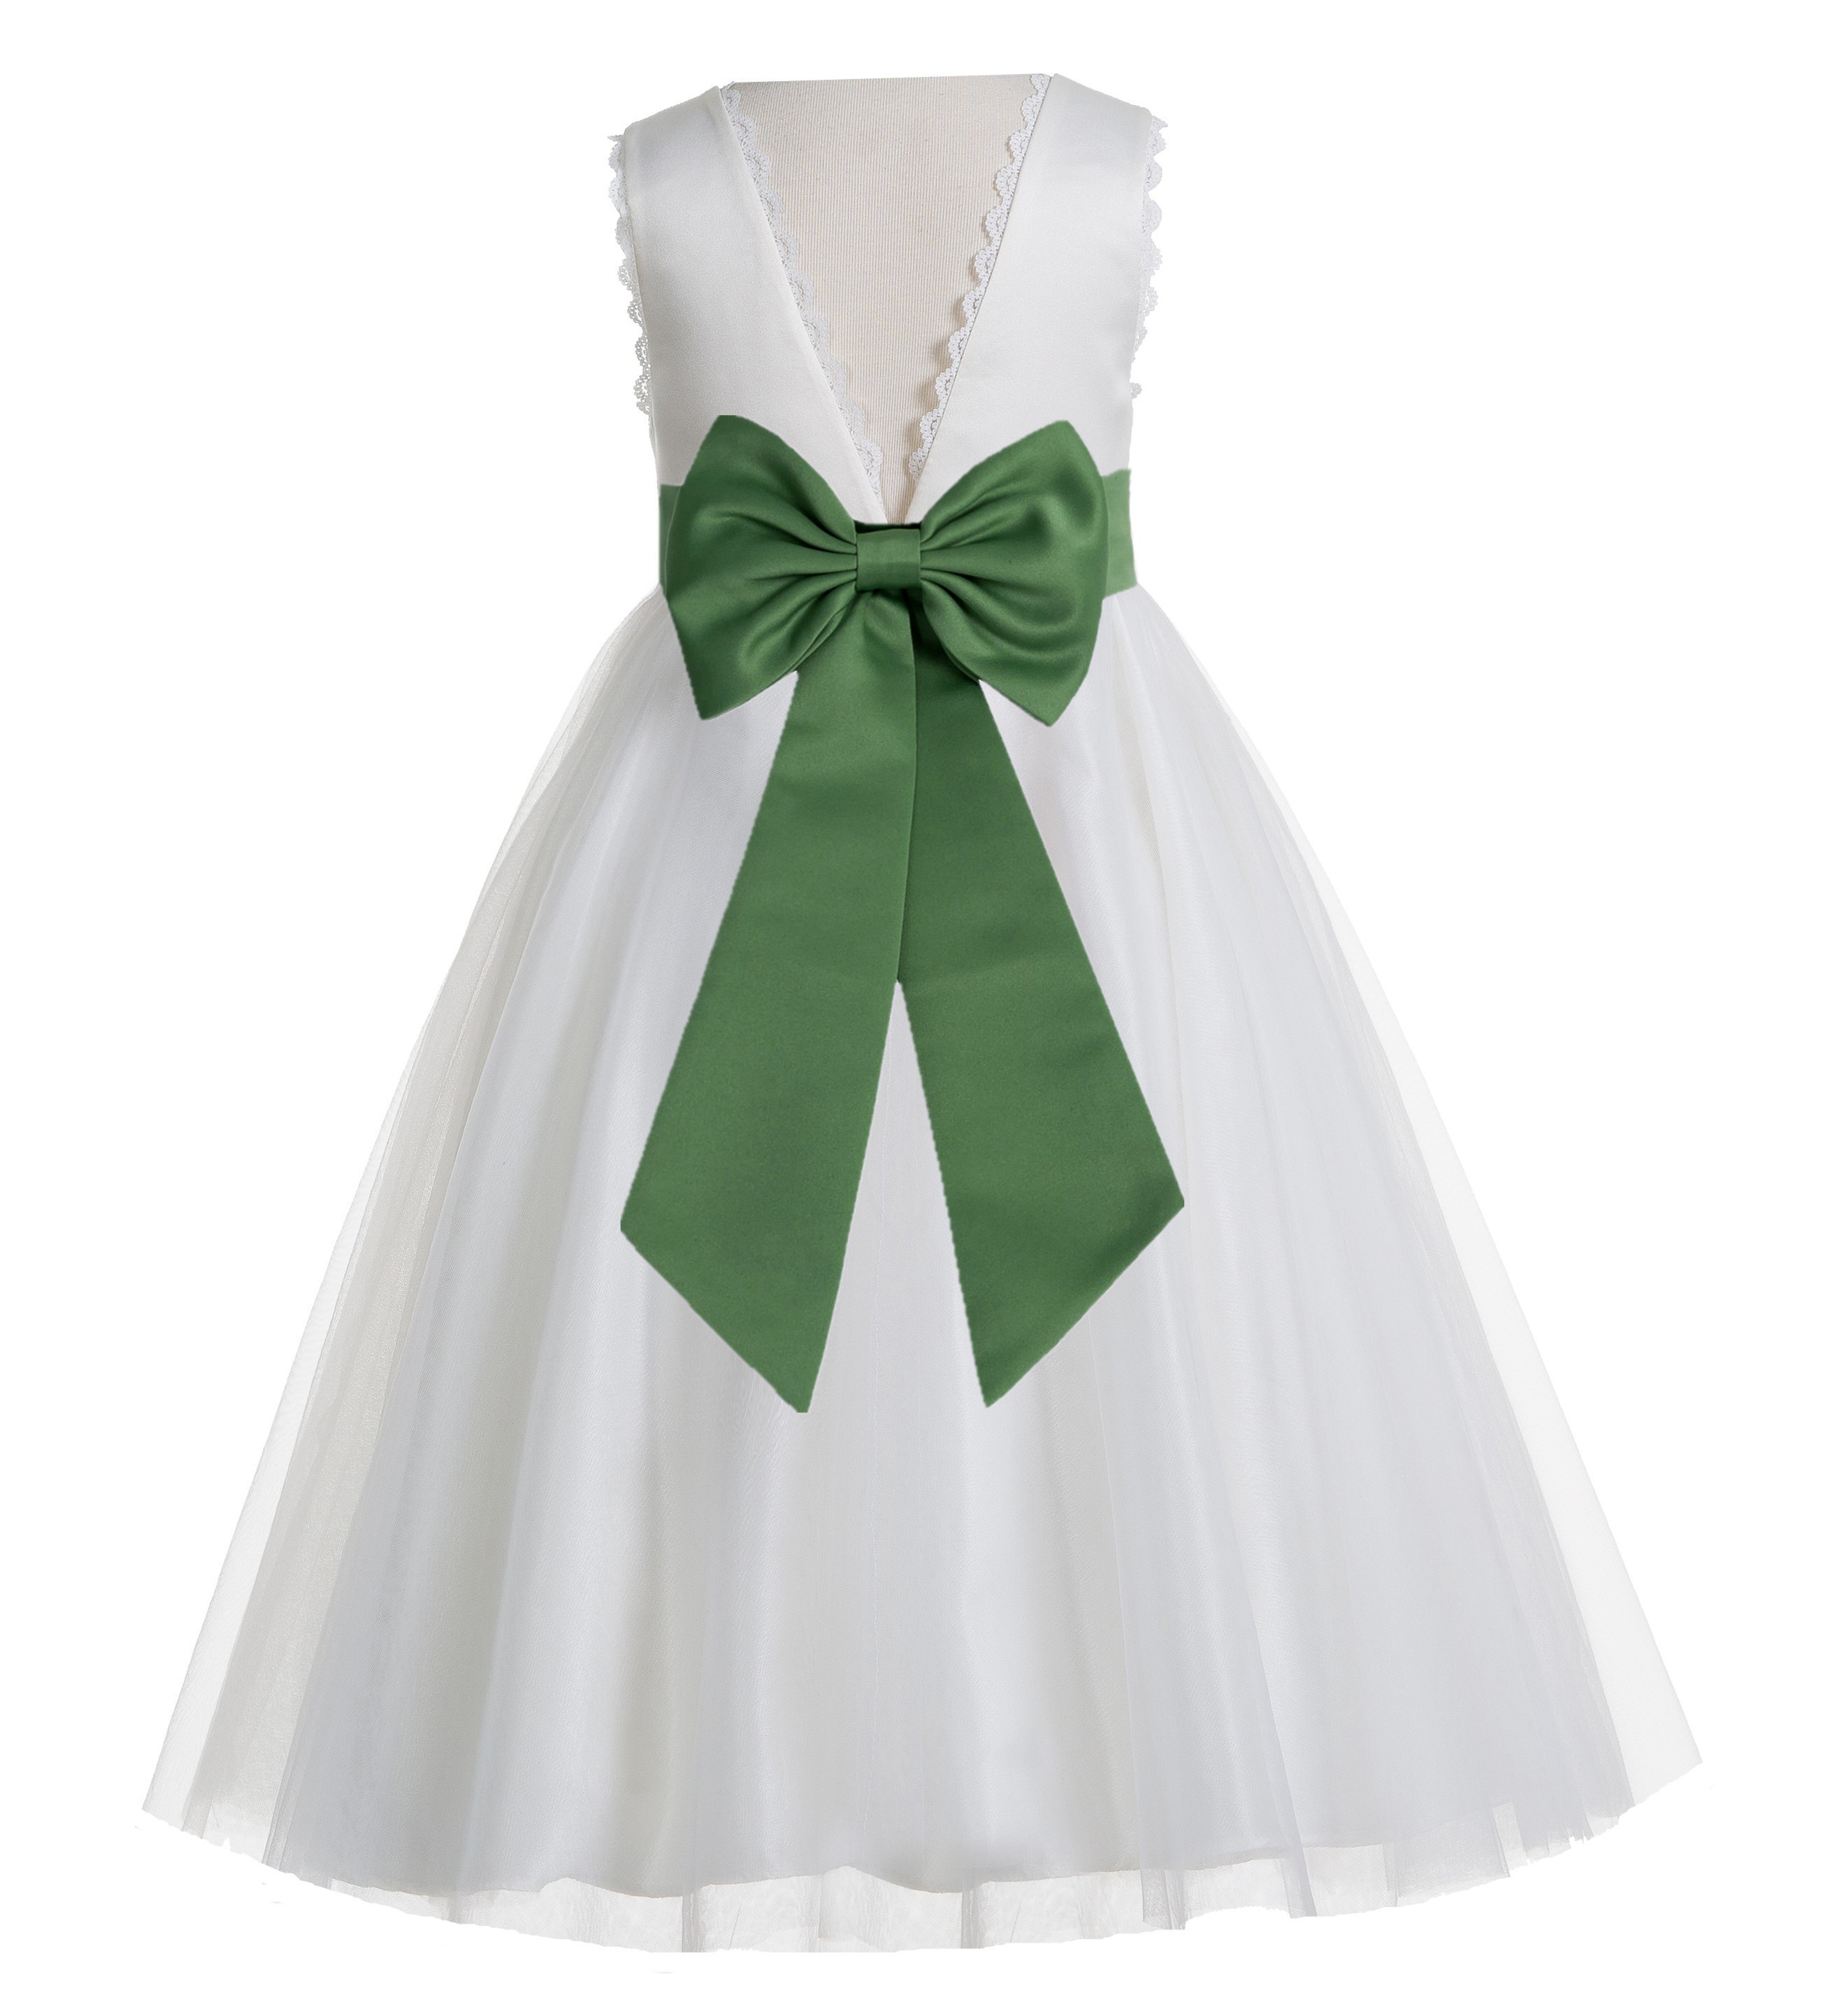 Ivory / Clover Green V-Back Lace Edge Flower Girl Dress 183T